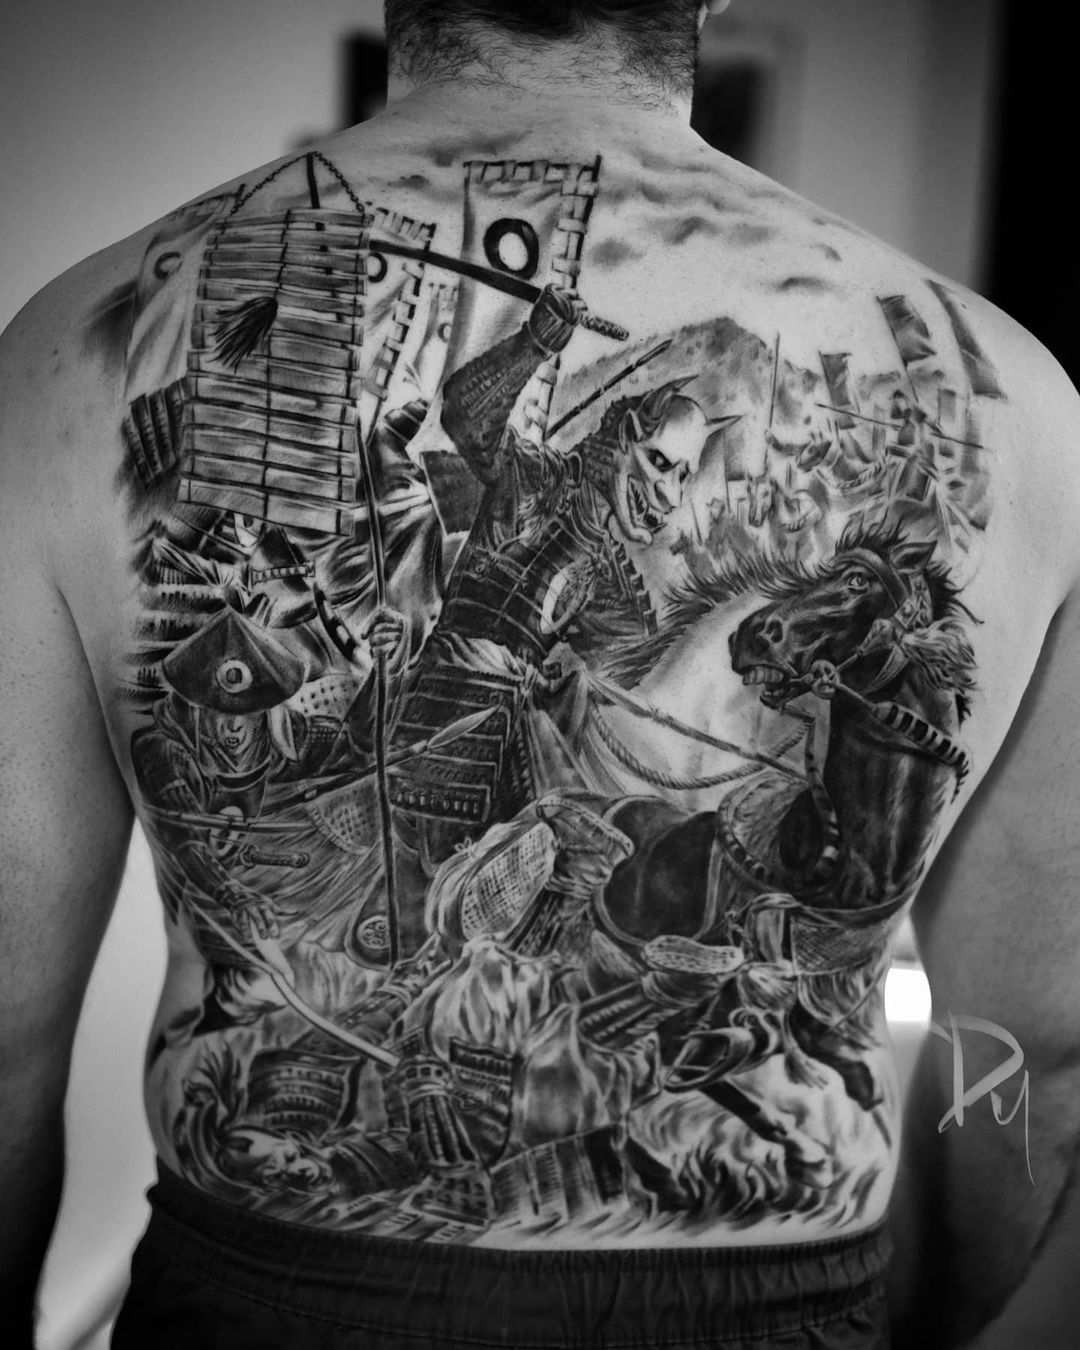 Chronic Ink Tattoos on Twitter Samurai back piece inprogress by Tristen  WorkProud WearProud httpstco6FfMAFBRNa  Twitter